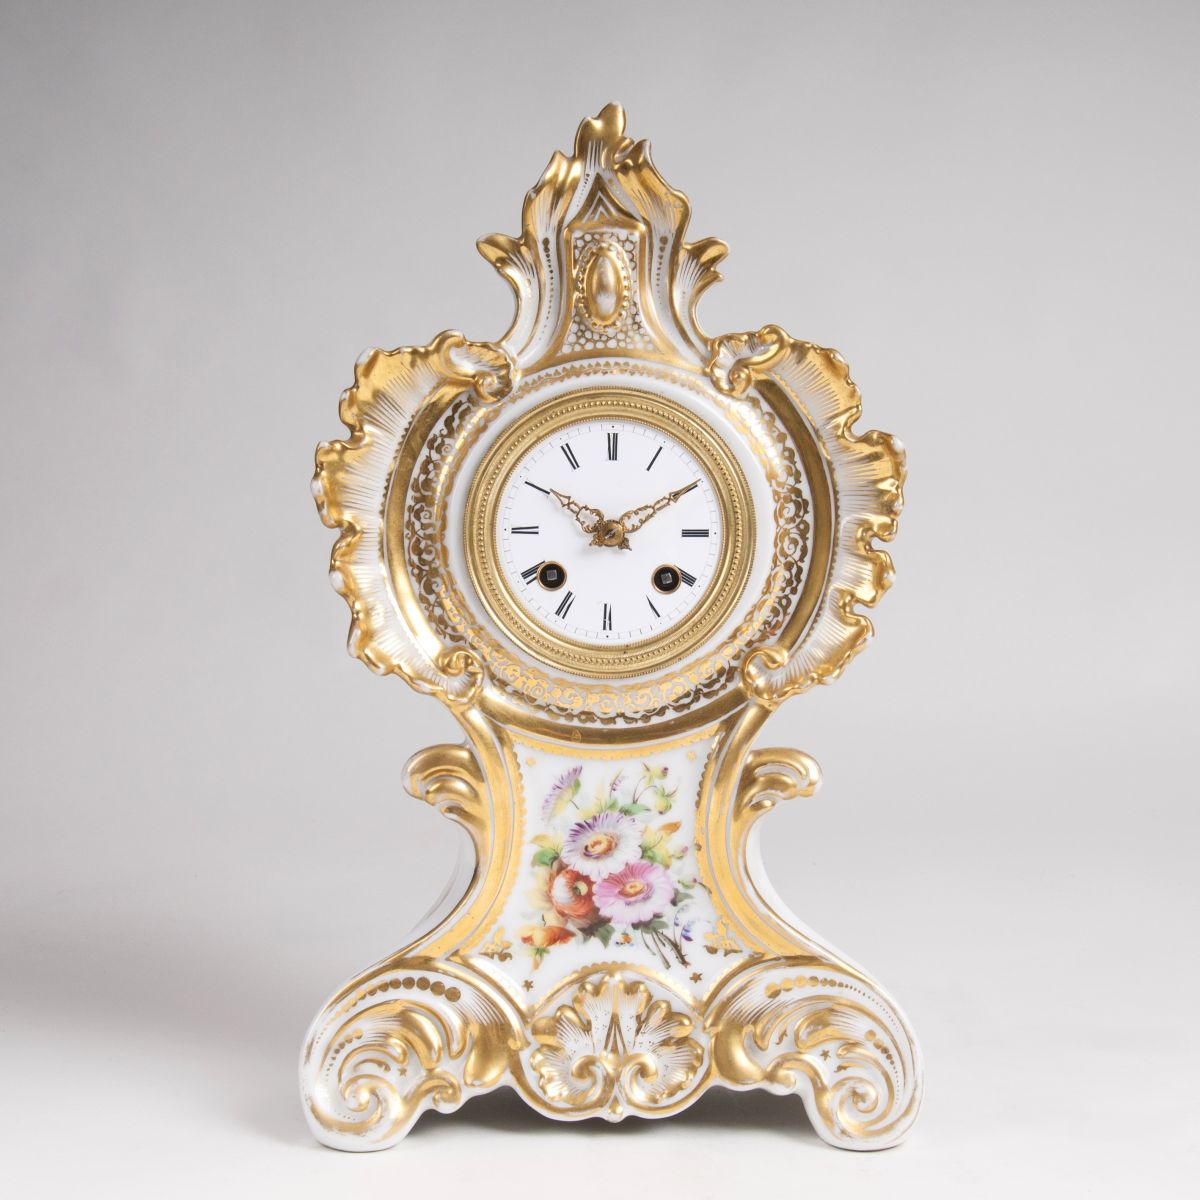 A  Porcelain Mantle Clock with Parisian Movement